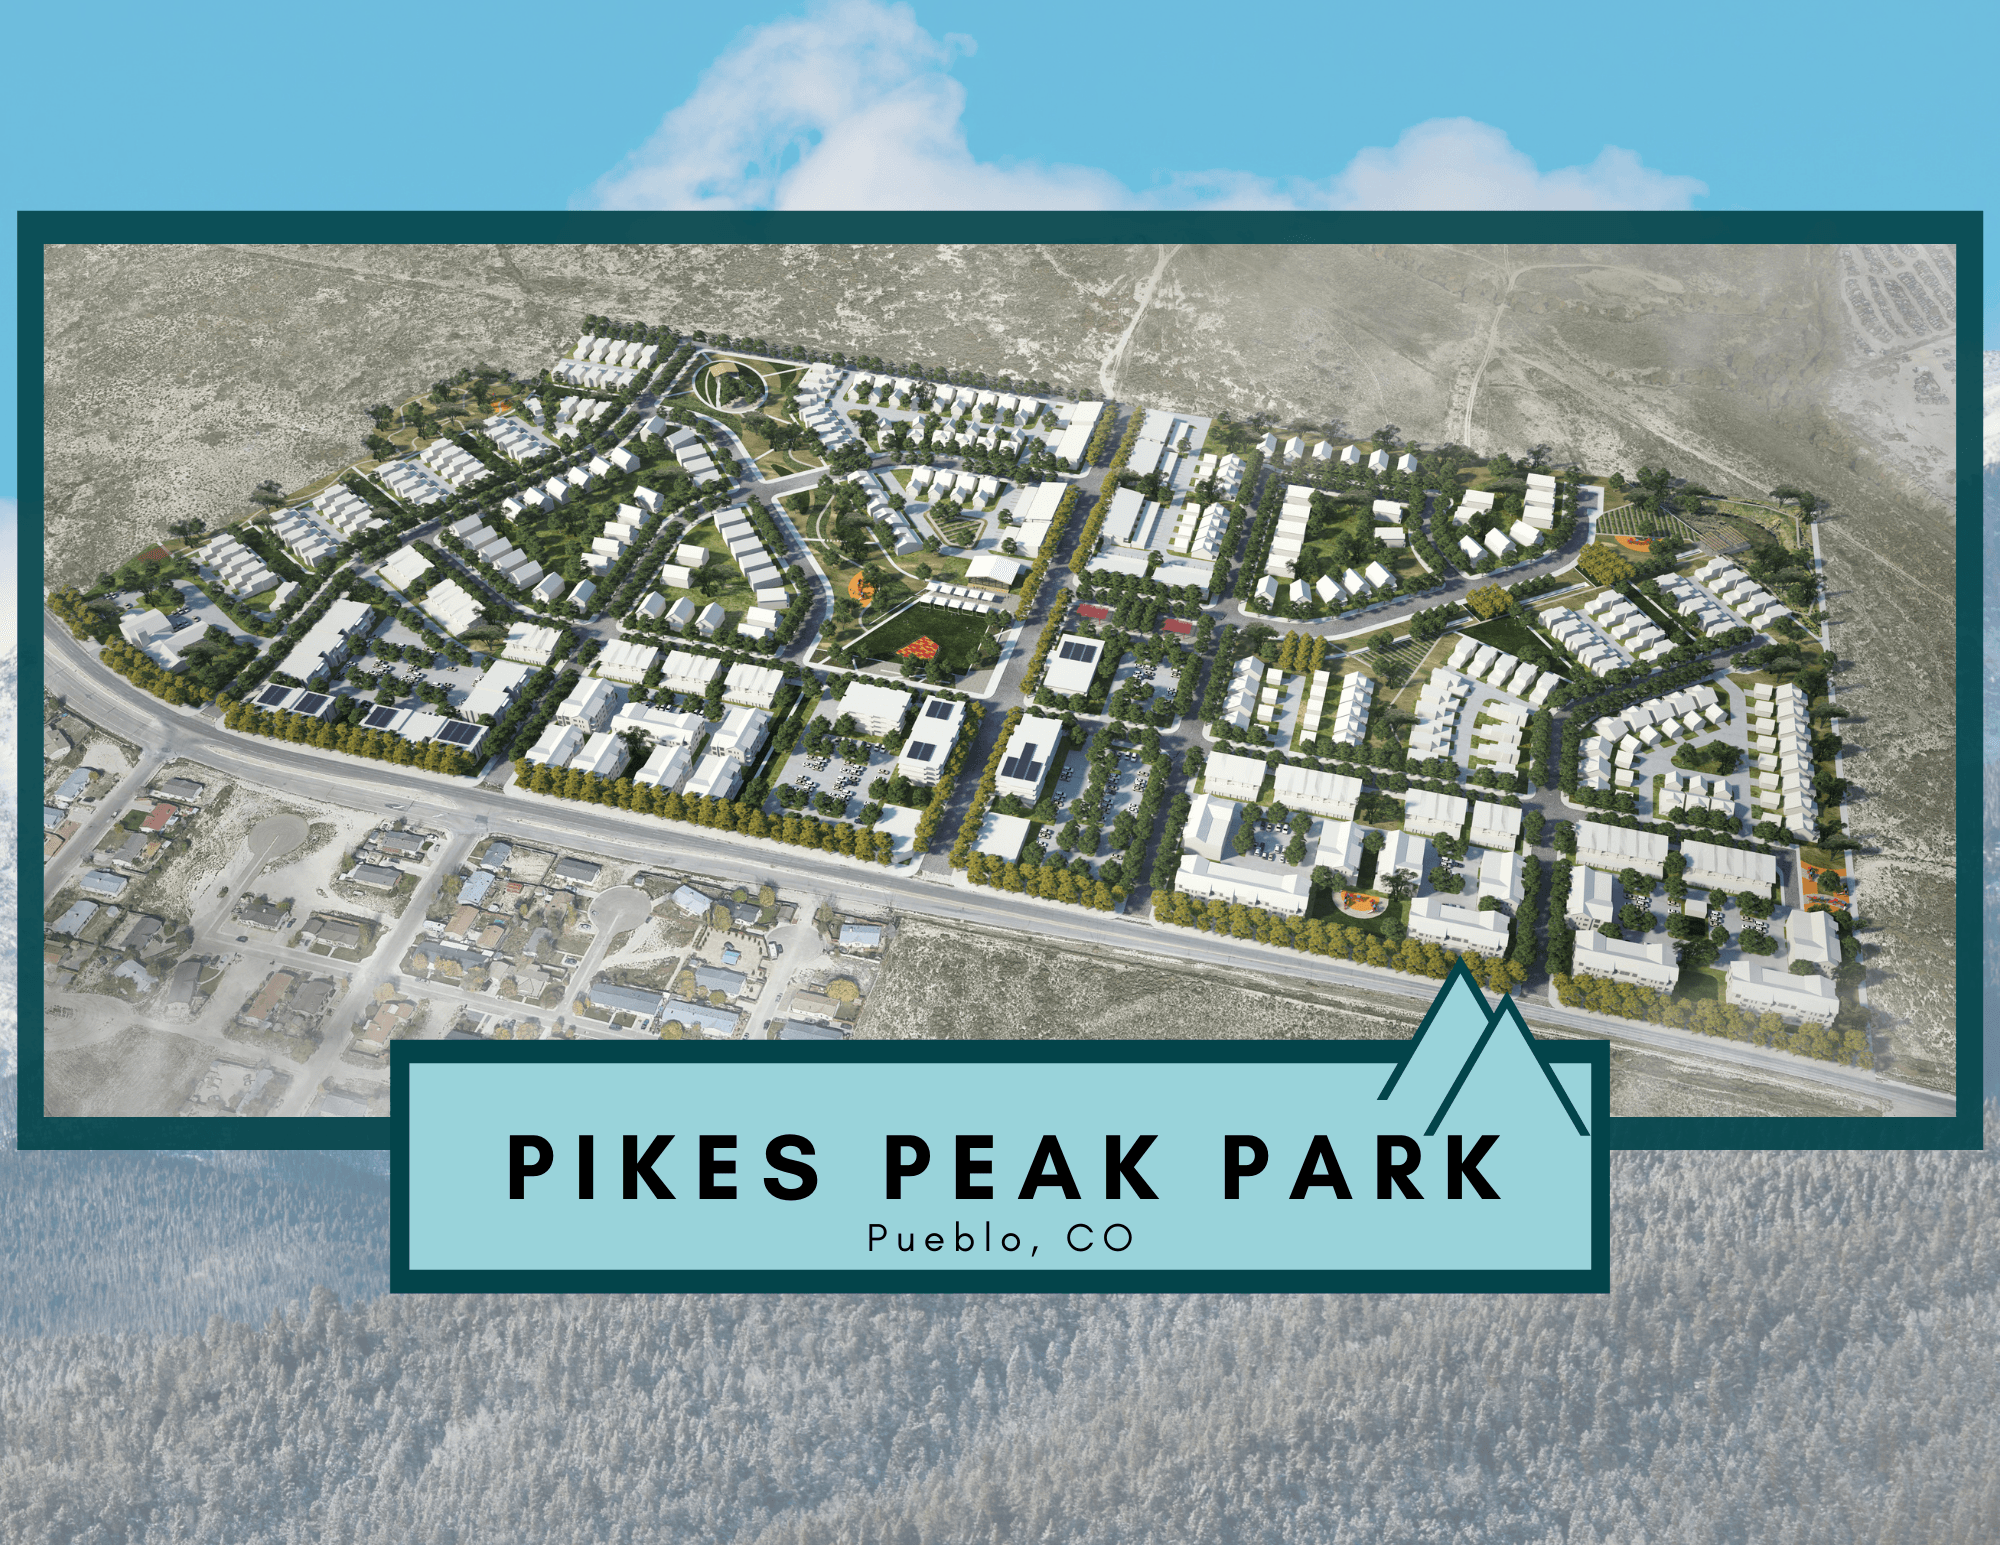 Pikes Peak Park